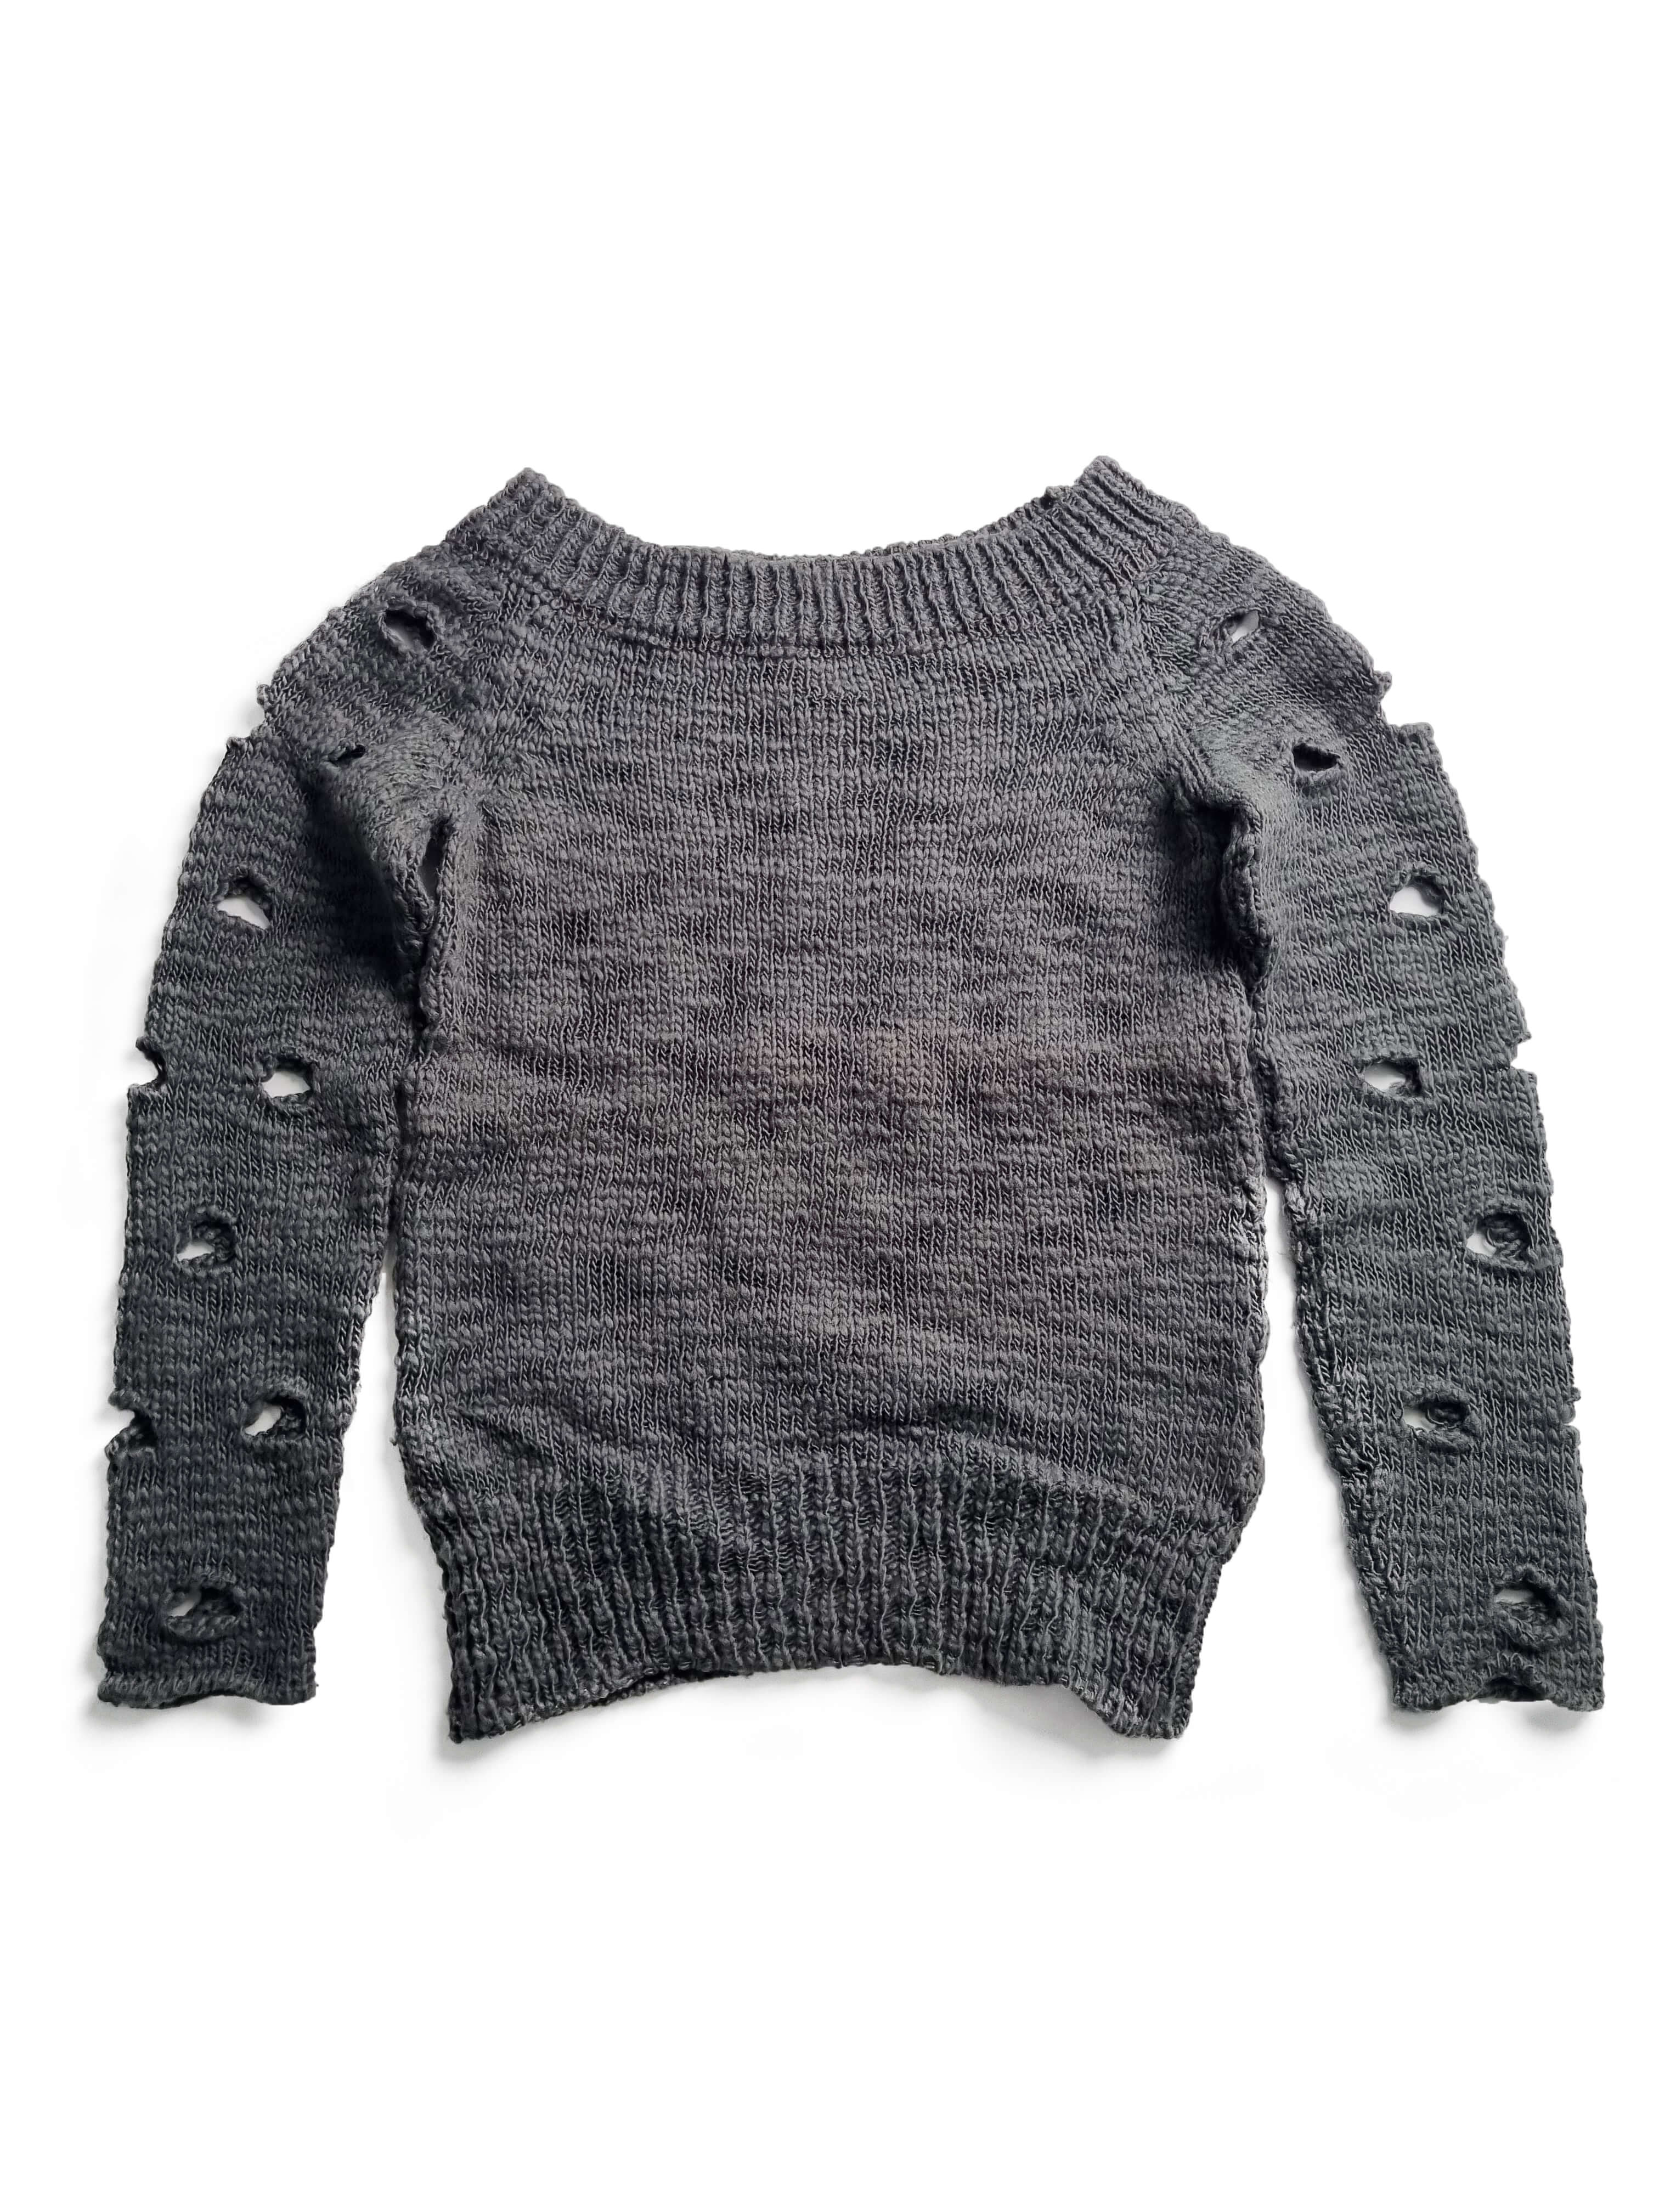 Diesel StyleLab 00s grunge sweater